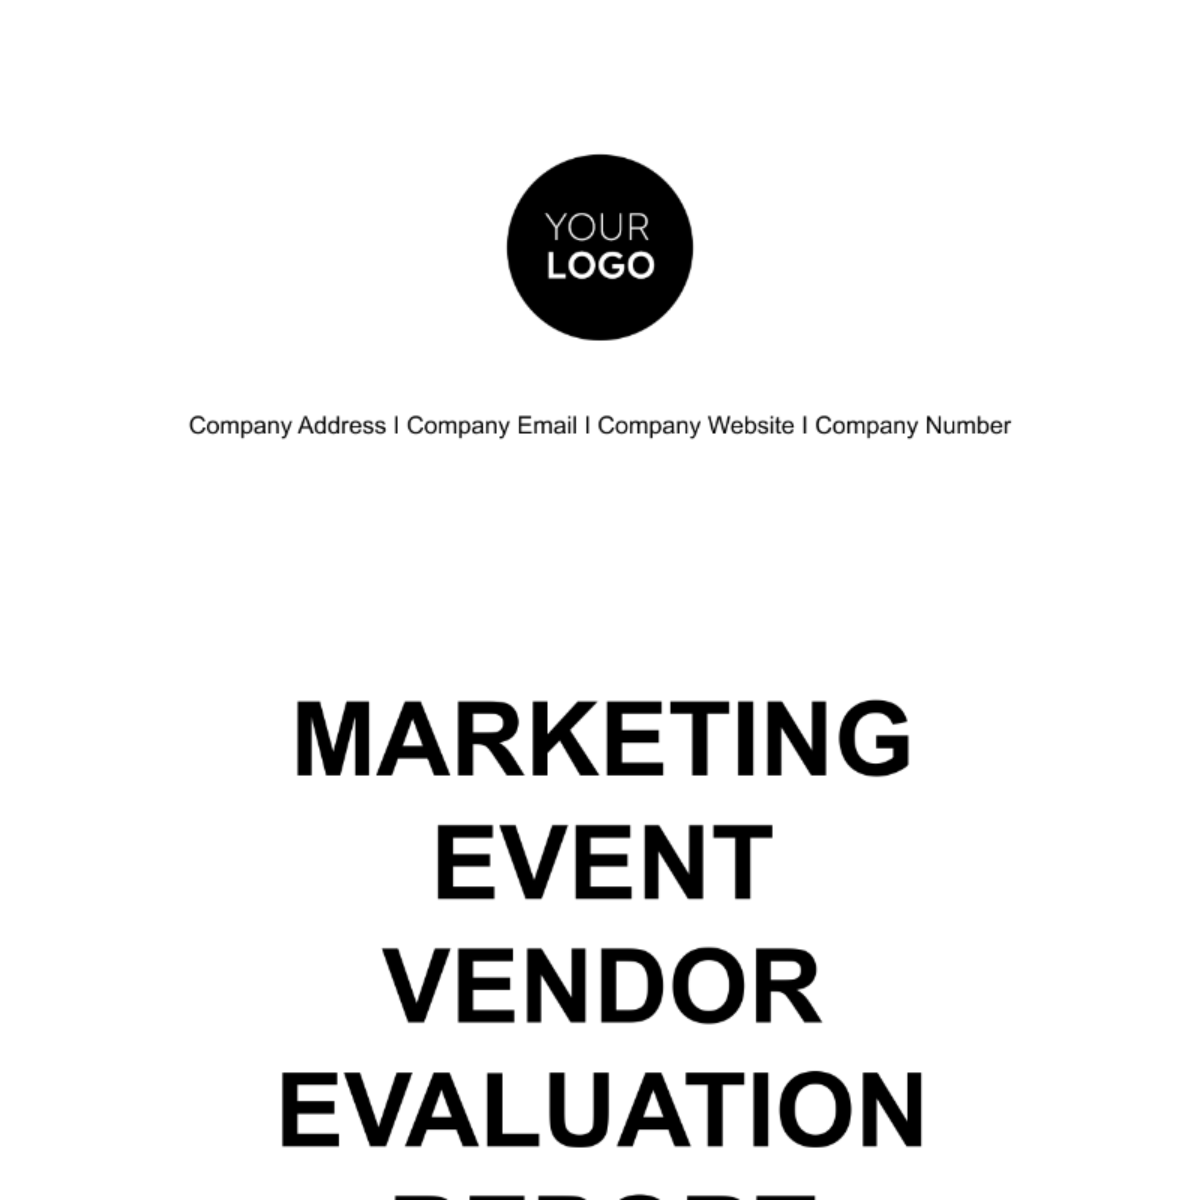 Marketing Event Vendor Evaluation Report Template